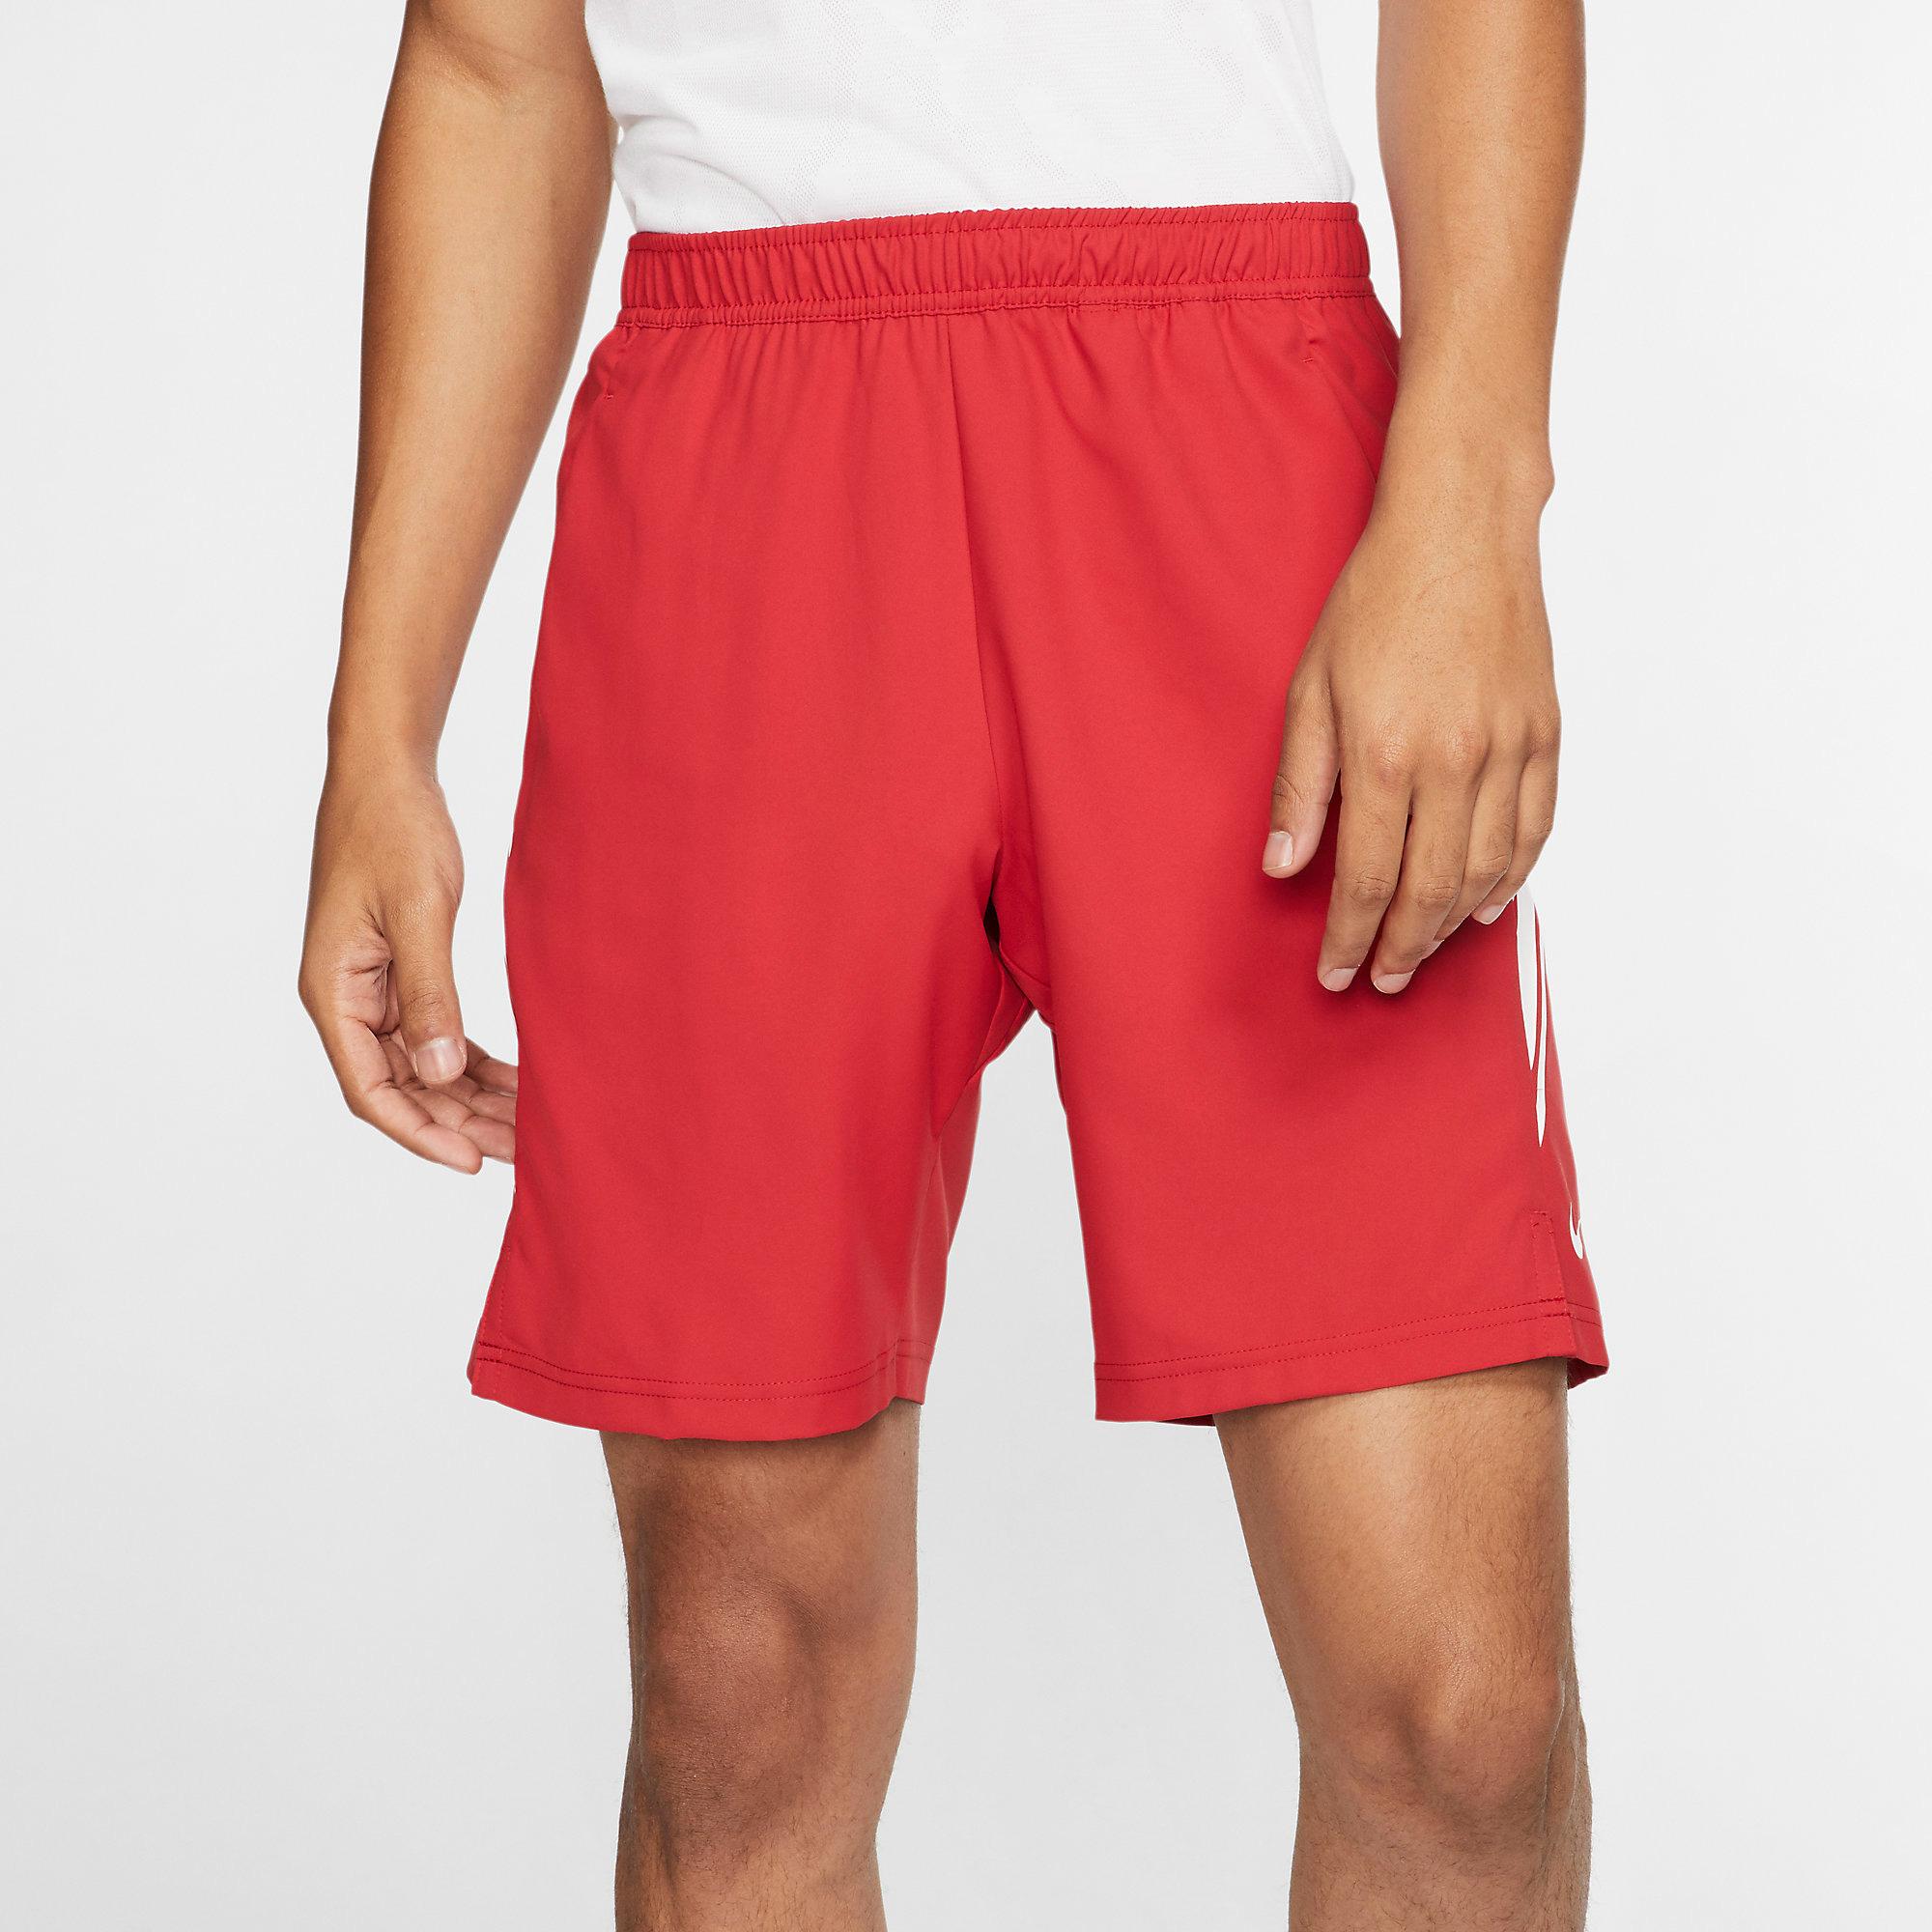 Nike Mens Dri-FIT 9 Inch Tennis Shorts - Gym Red/White - Tennisnuts.com